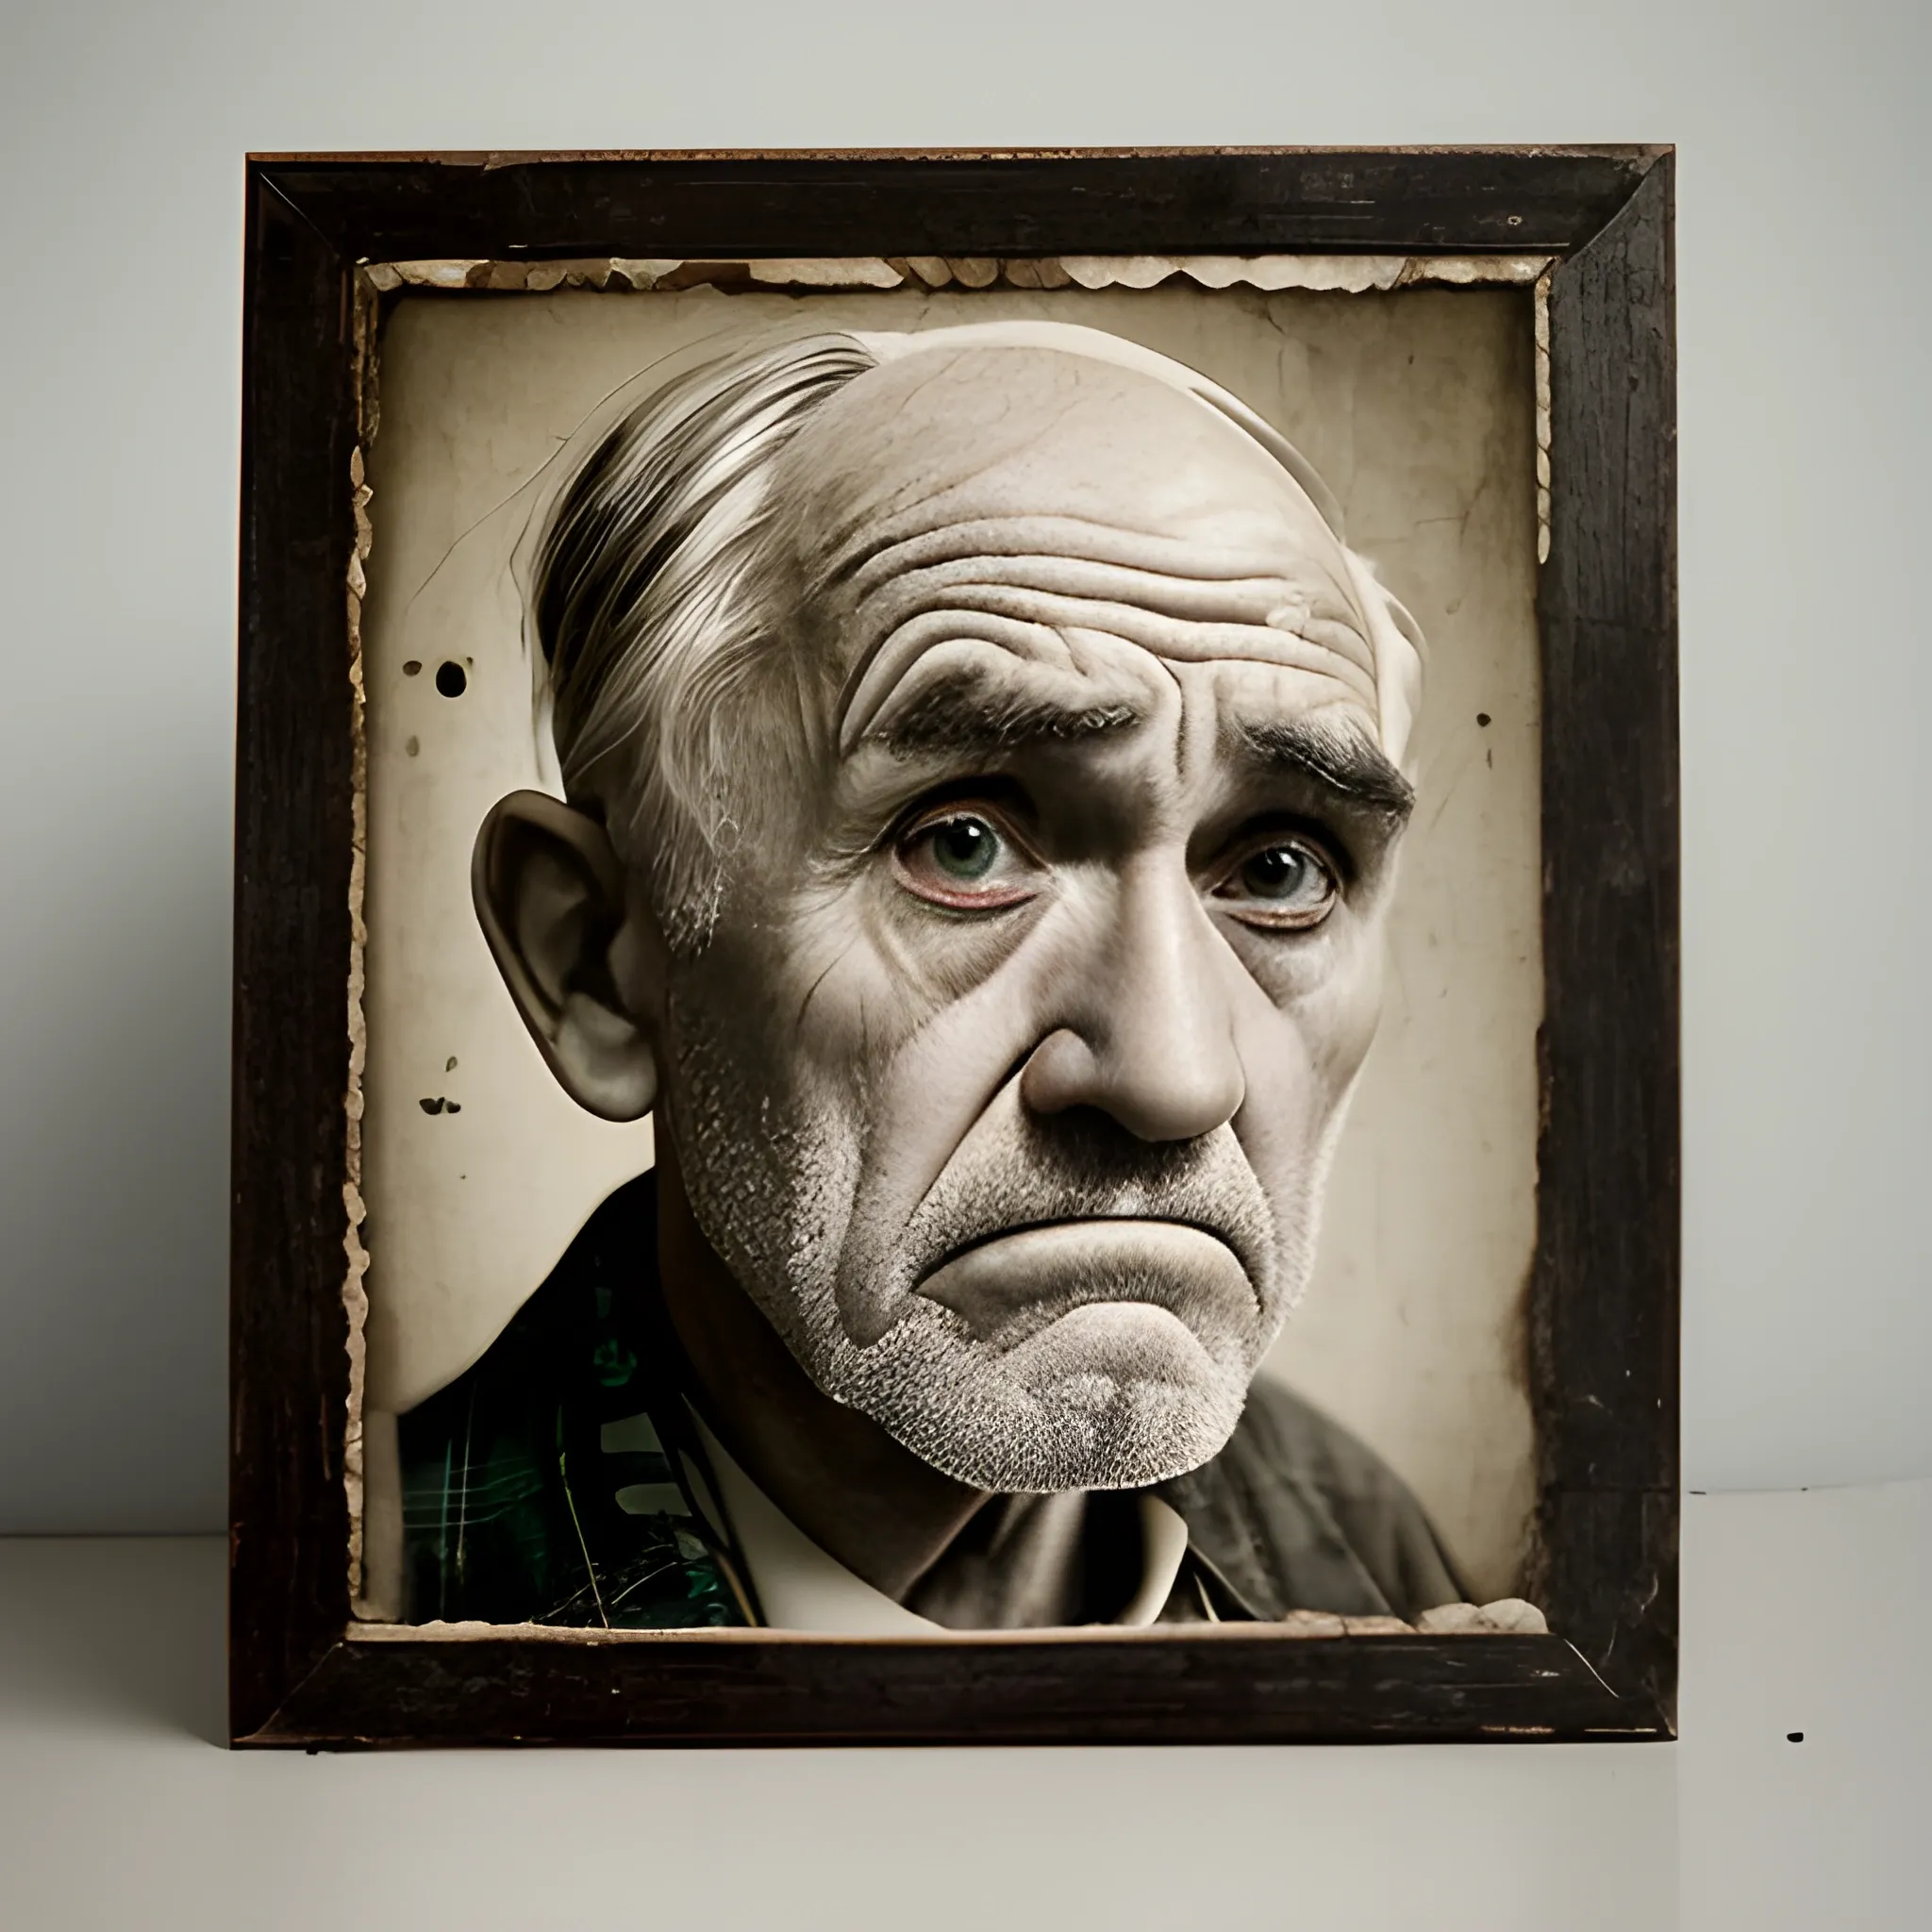 a sad old man face vintage